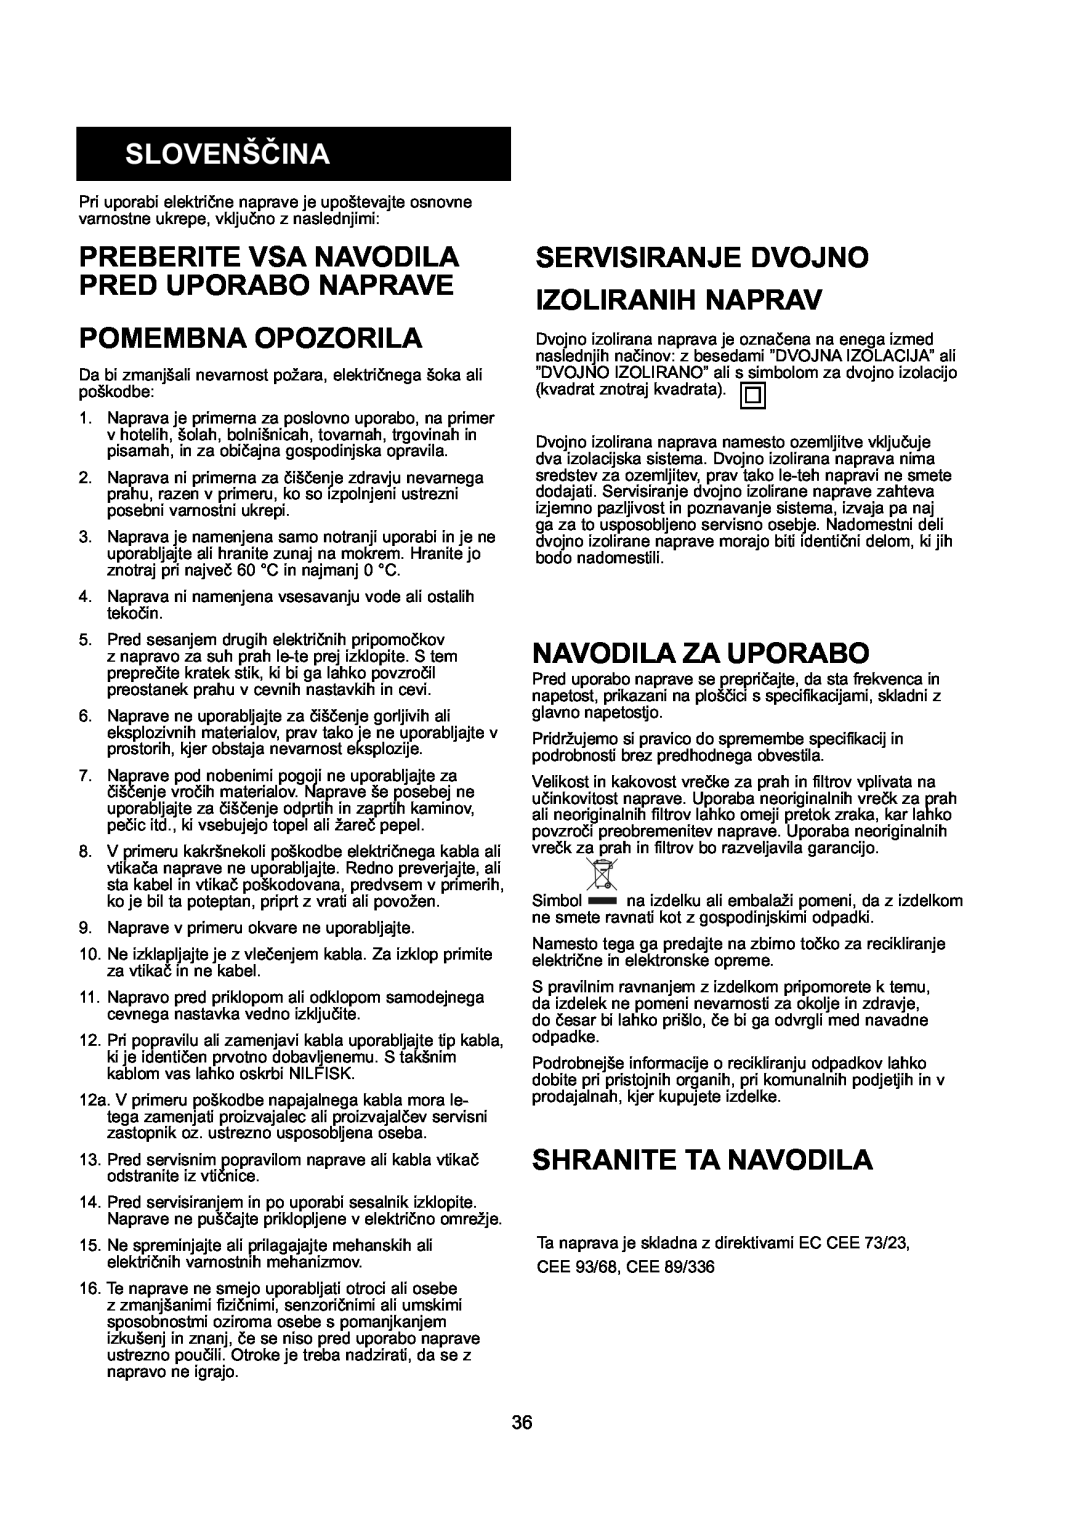 Nilfisk-ALTO GD 10 Back Slovenščina, Preberite Vsa Navodila Pred Uporabo Naprave, Pomembna Opozorila, Navodila Za Uporabo 